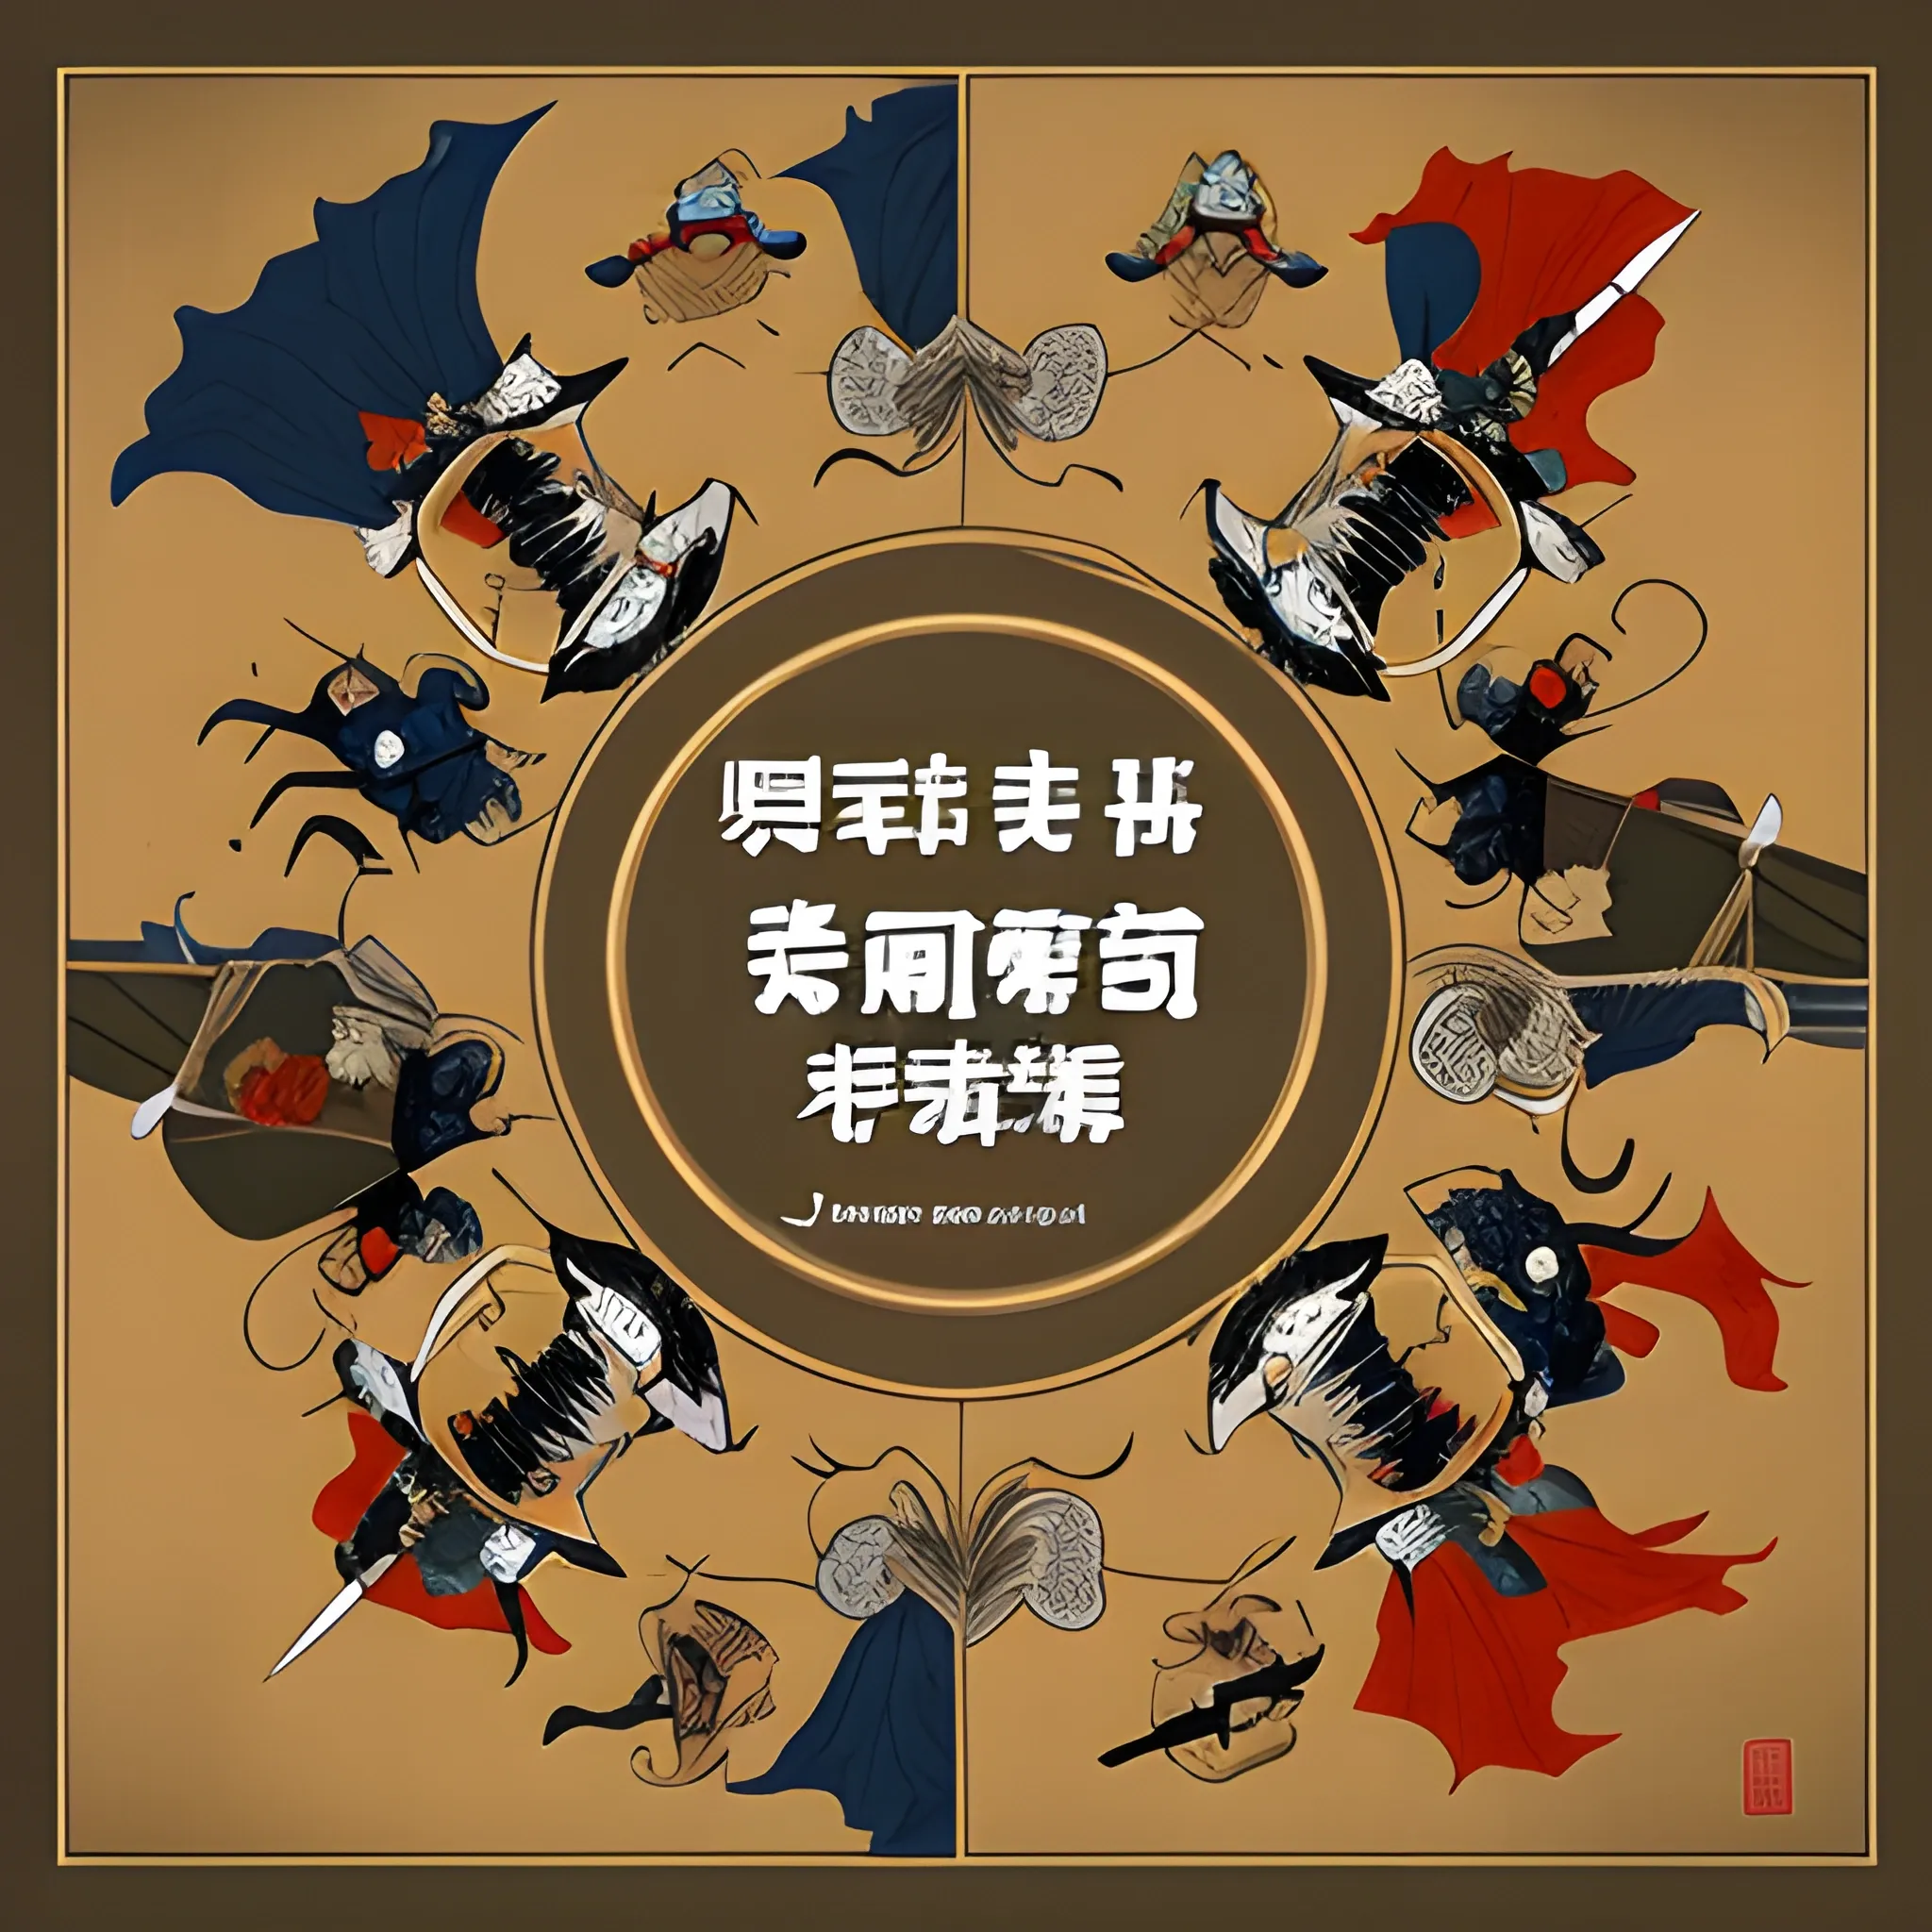 song dynasty war  of  china
, Cartoon